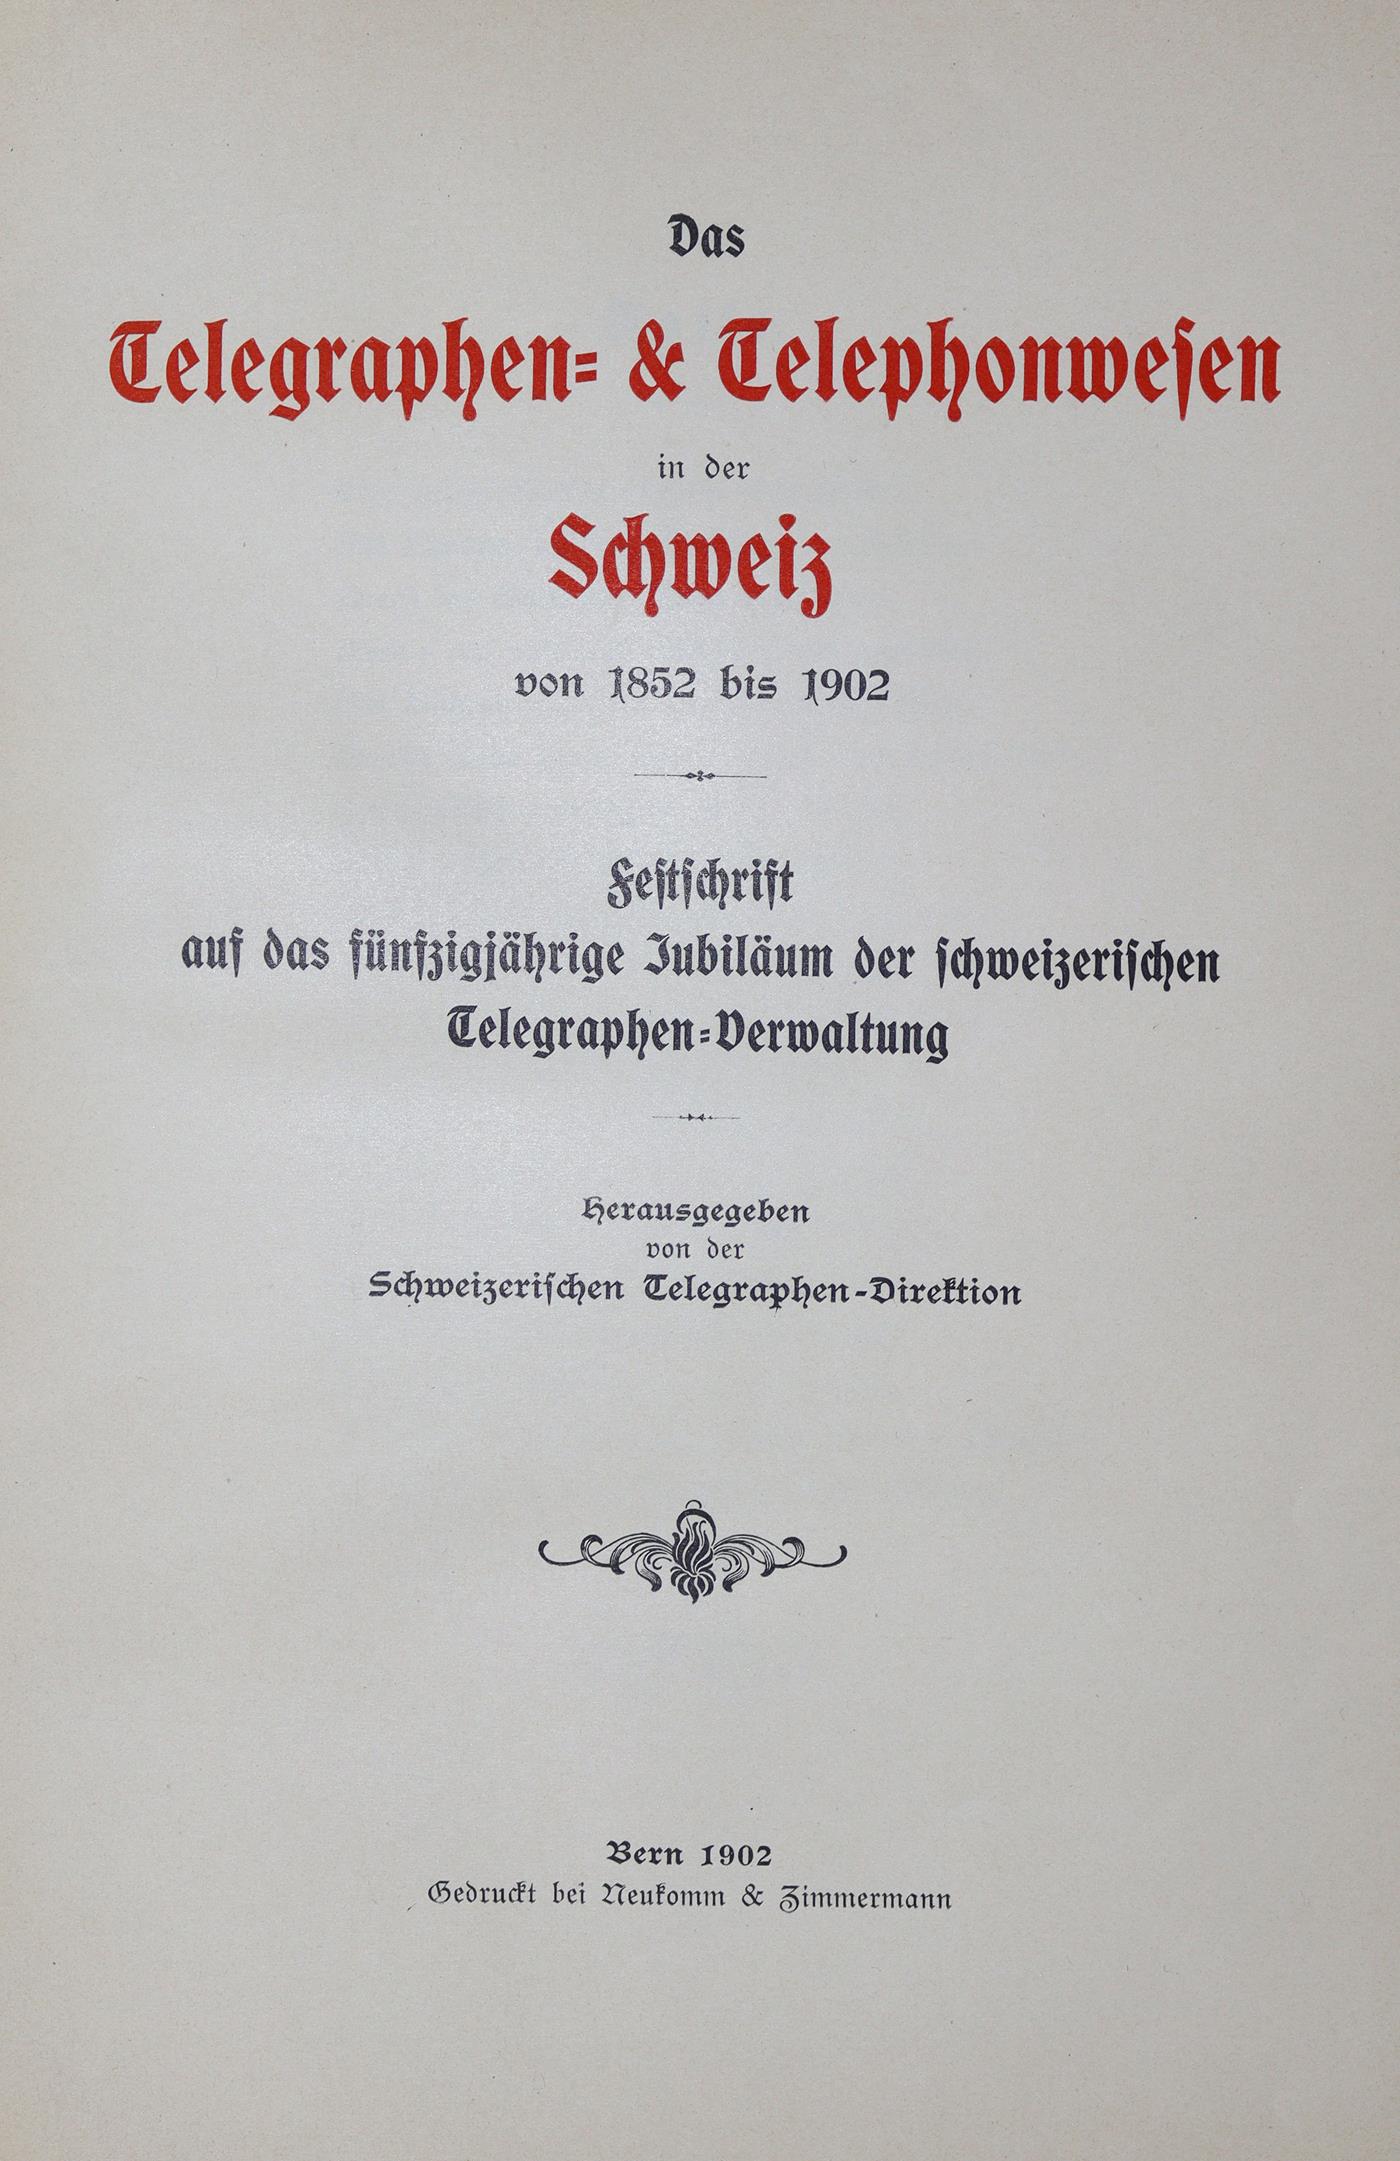 Telegraphen- & Telephonwesen in der Schweiz, Das, | Bild Nr.1